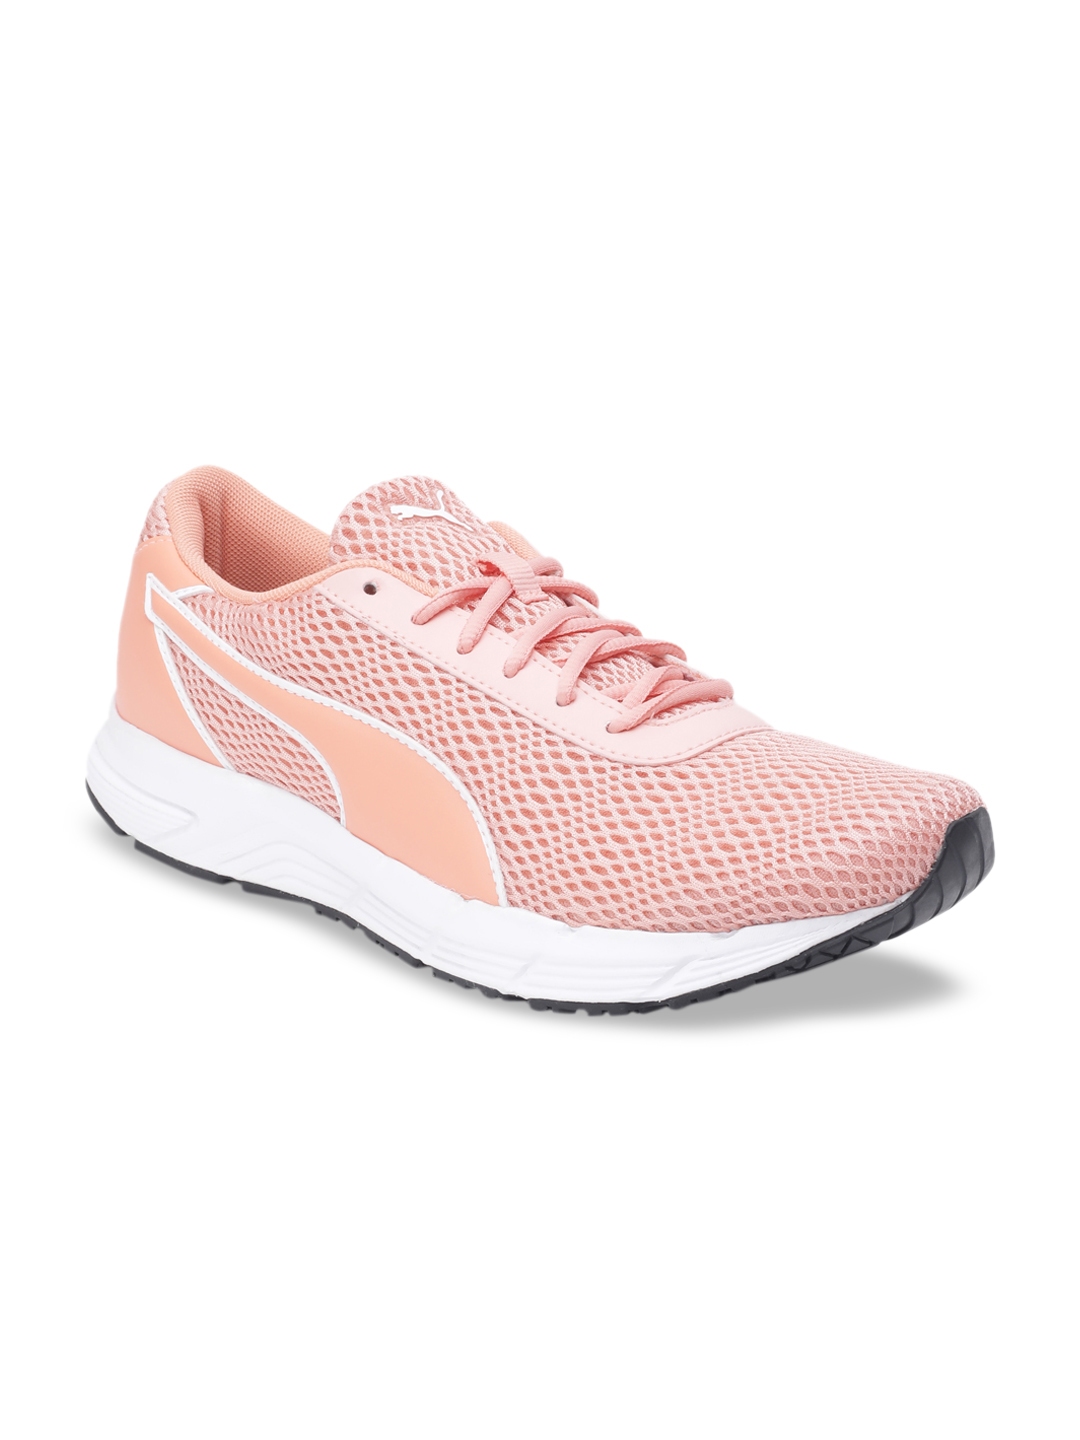 Buy Puma Women Pink IDP Running Shoes - Sports Shoes for Women 10098451 ...